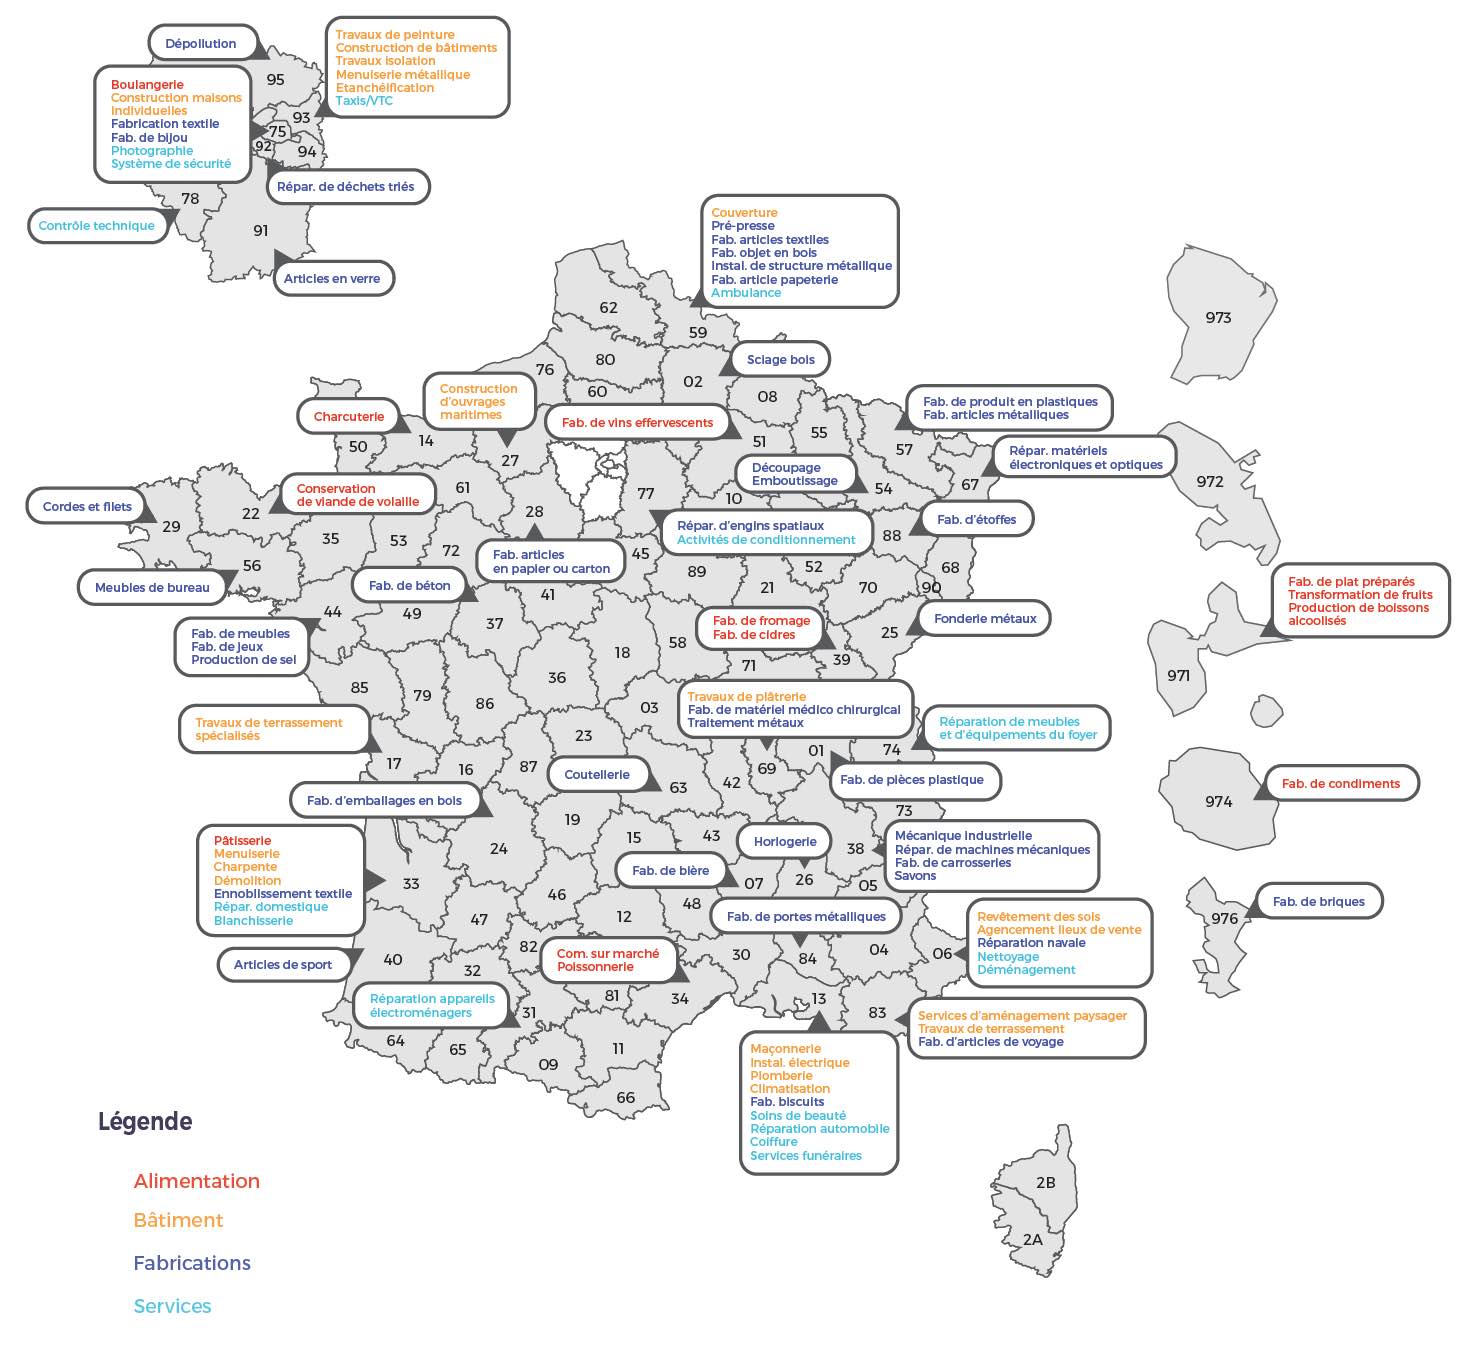 Carte de créations d'entreprises artisanales par région - Source : Baromètre ISM-MAAF